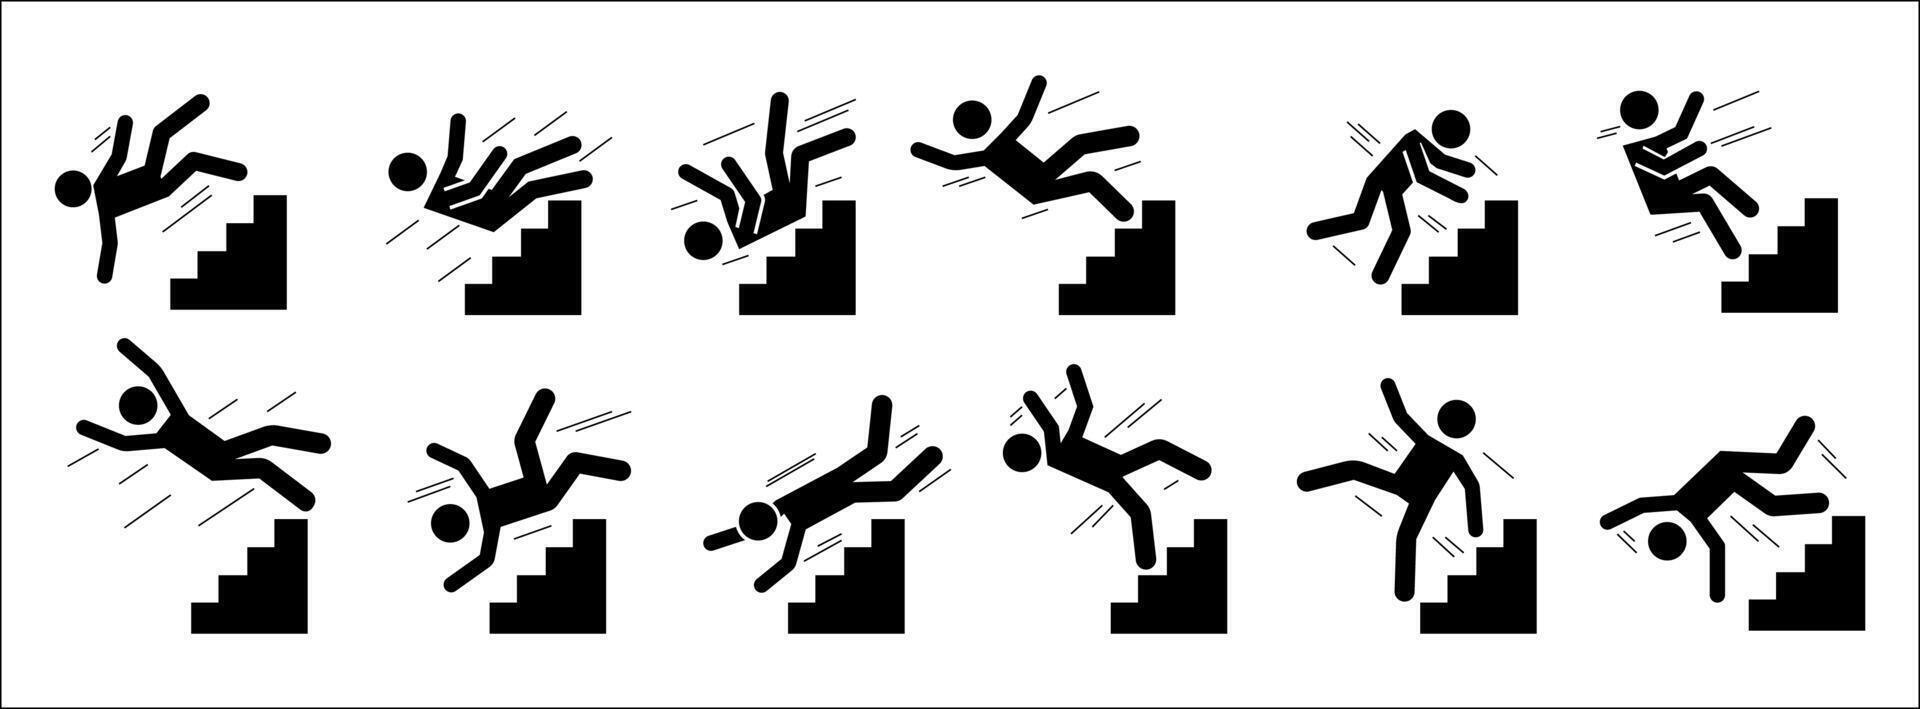 pinne man falla ner. svart silhuett piktogram av människor faller från trappa och stege, utmattad och trött personer. vektor uppsättning